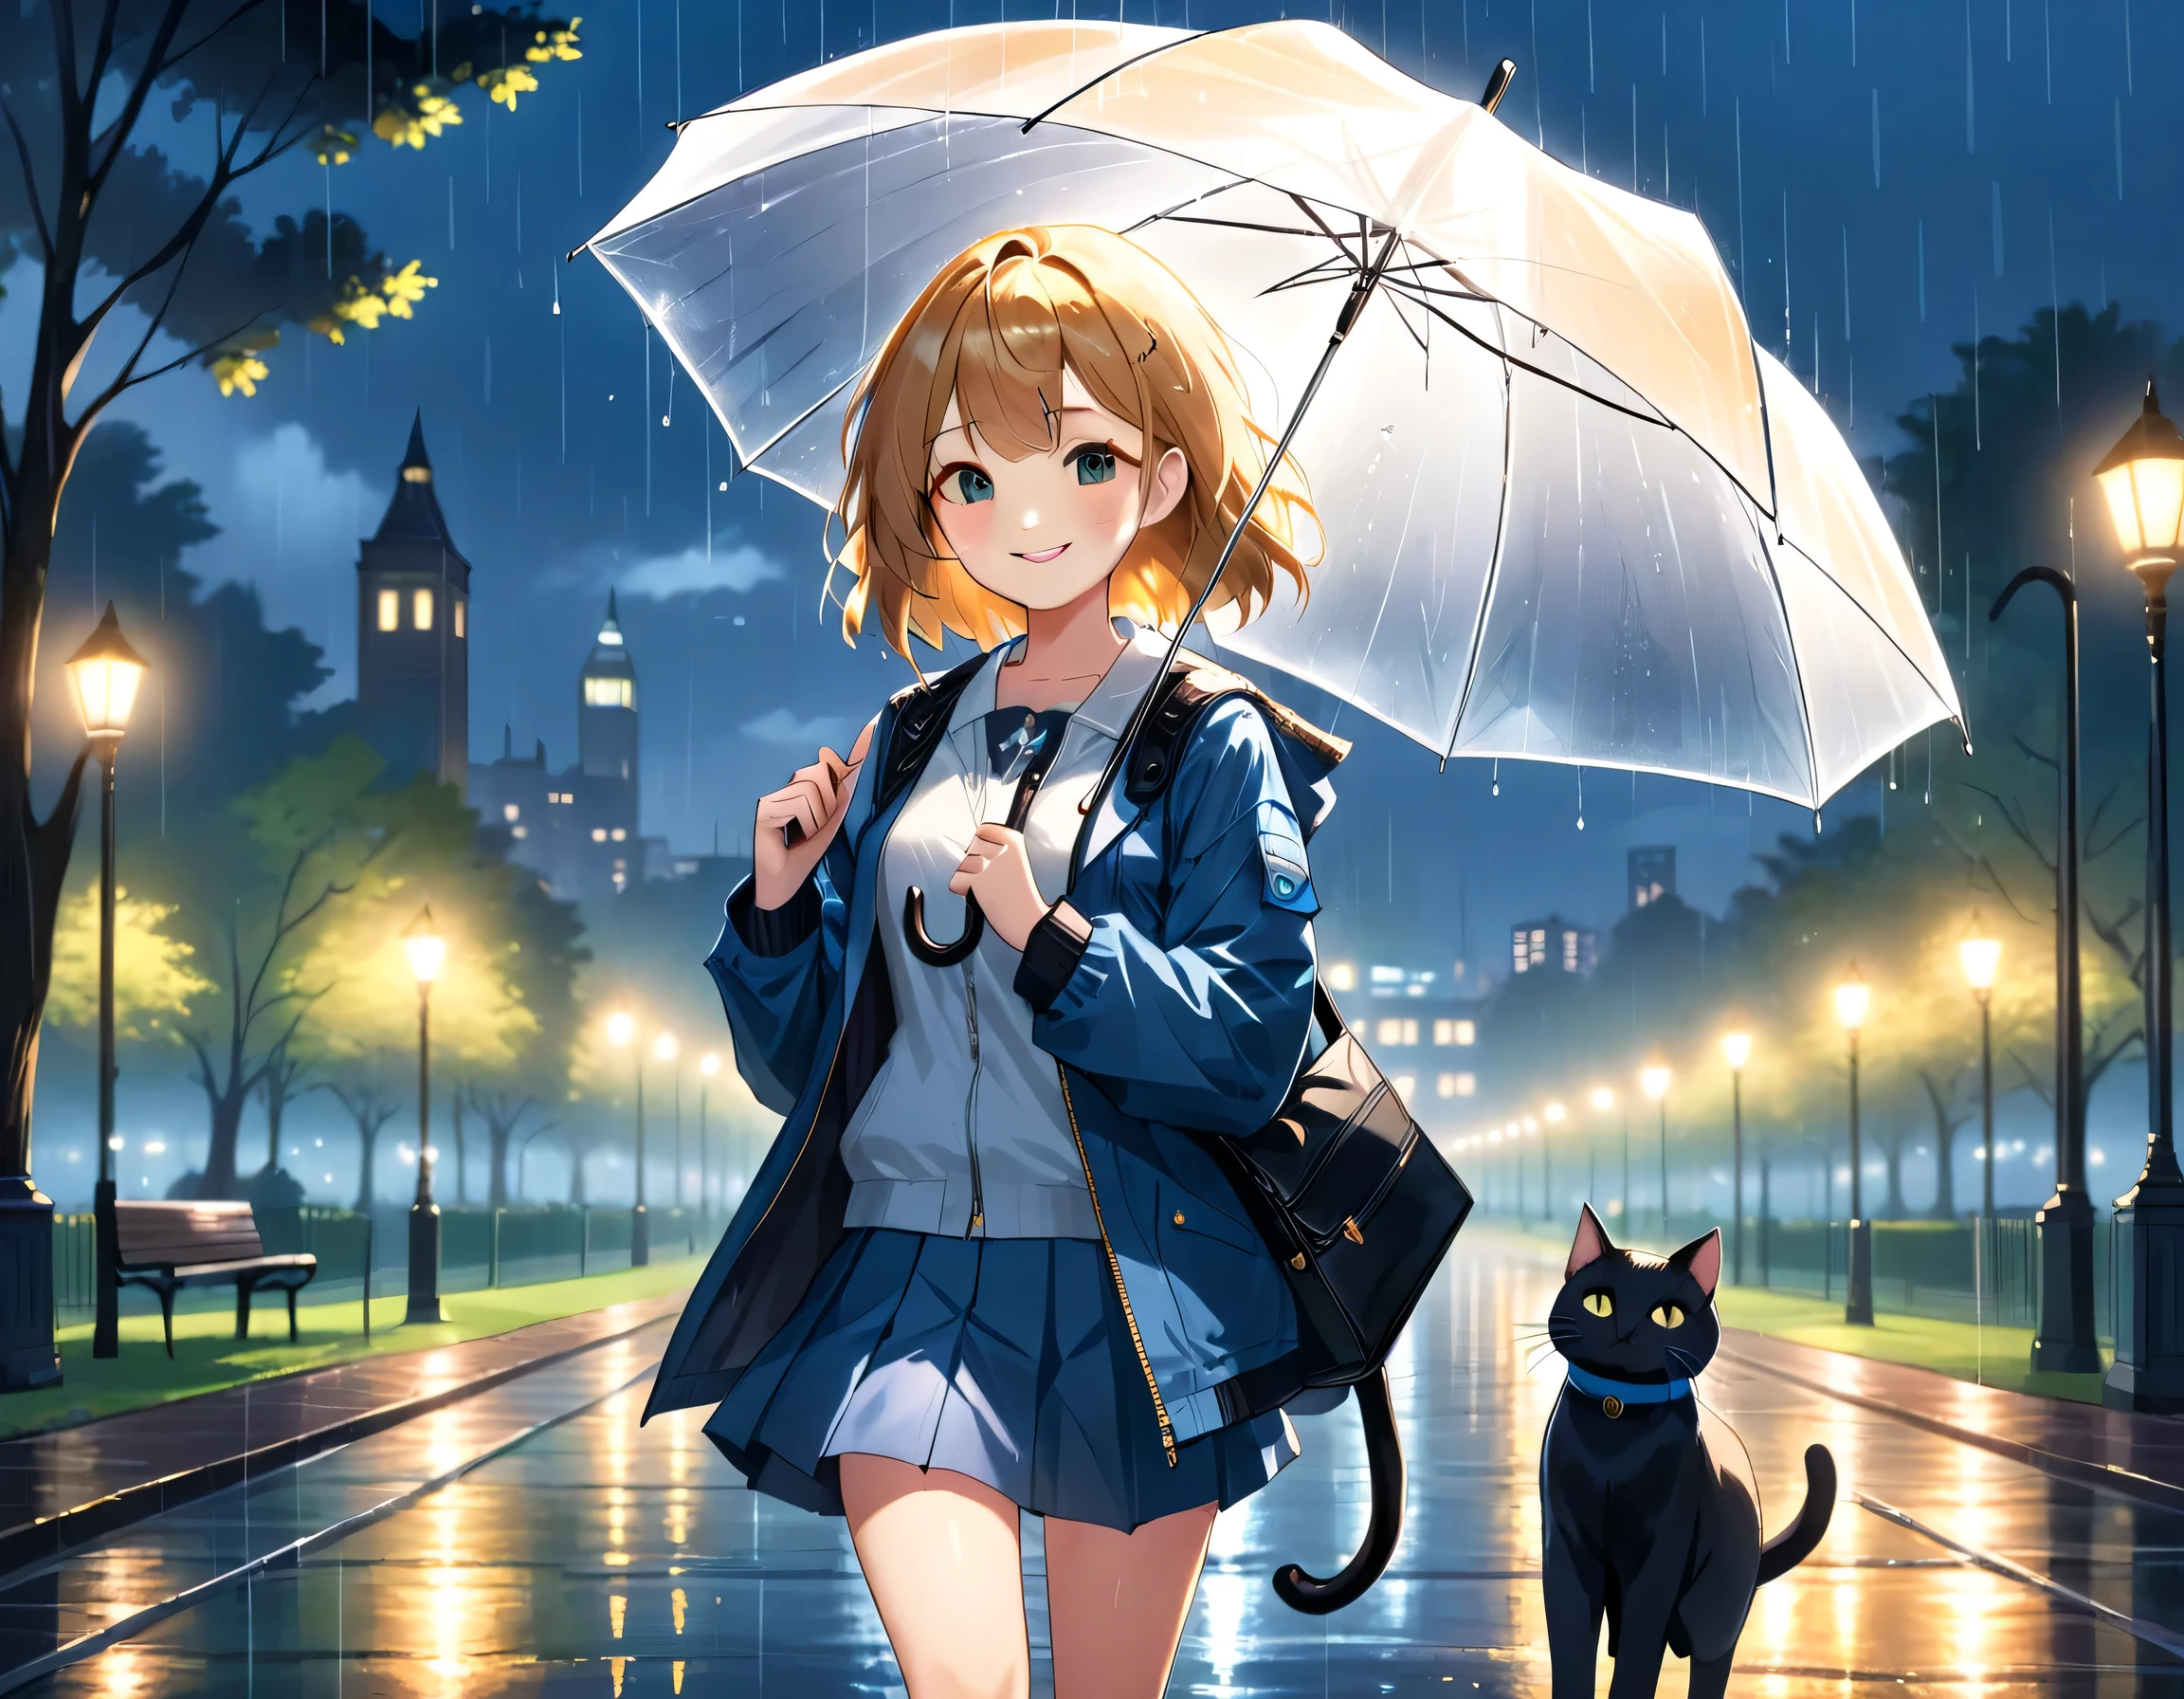 (걸작, 최고의 품질, 8K), 
공원에 있는 소녀와 고양이의 그림, 비가 오고 있는데 그녀는 우산을 들고 있다, 어두운 저녁, 확산된 도시의 빛이 빛나는, 재킷, 미니 스커트, 어깨에 매는 가방, 고양이를 위해 우산을 들고 있다, 웃고있는